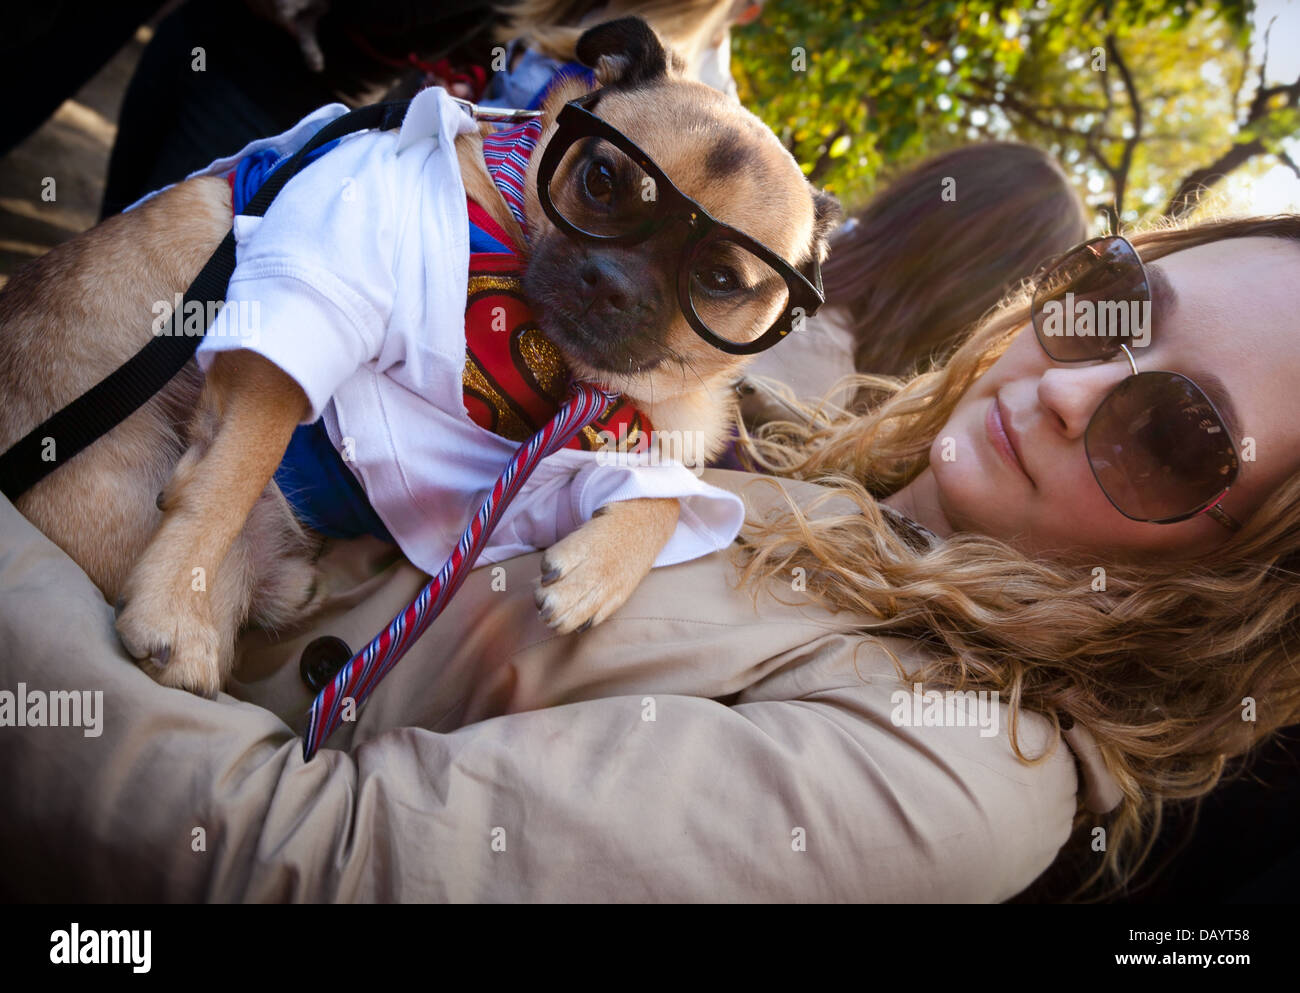 Une femme et son chien, qui est habillé comme Clark Kent à partir de la bande dessinée Superman, assister à un concours de costumes d'Halloween à New York. Banque D'Images